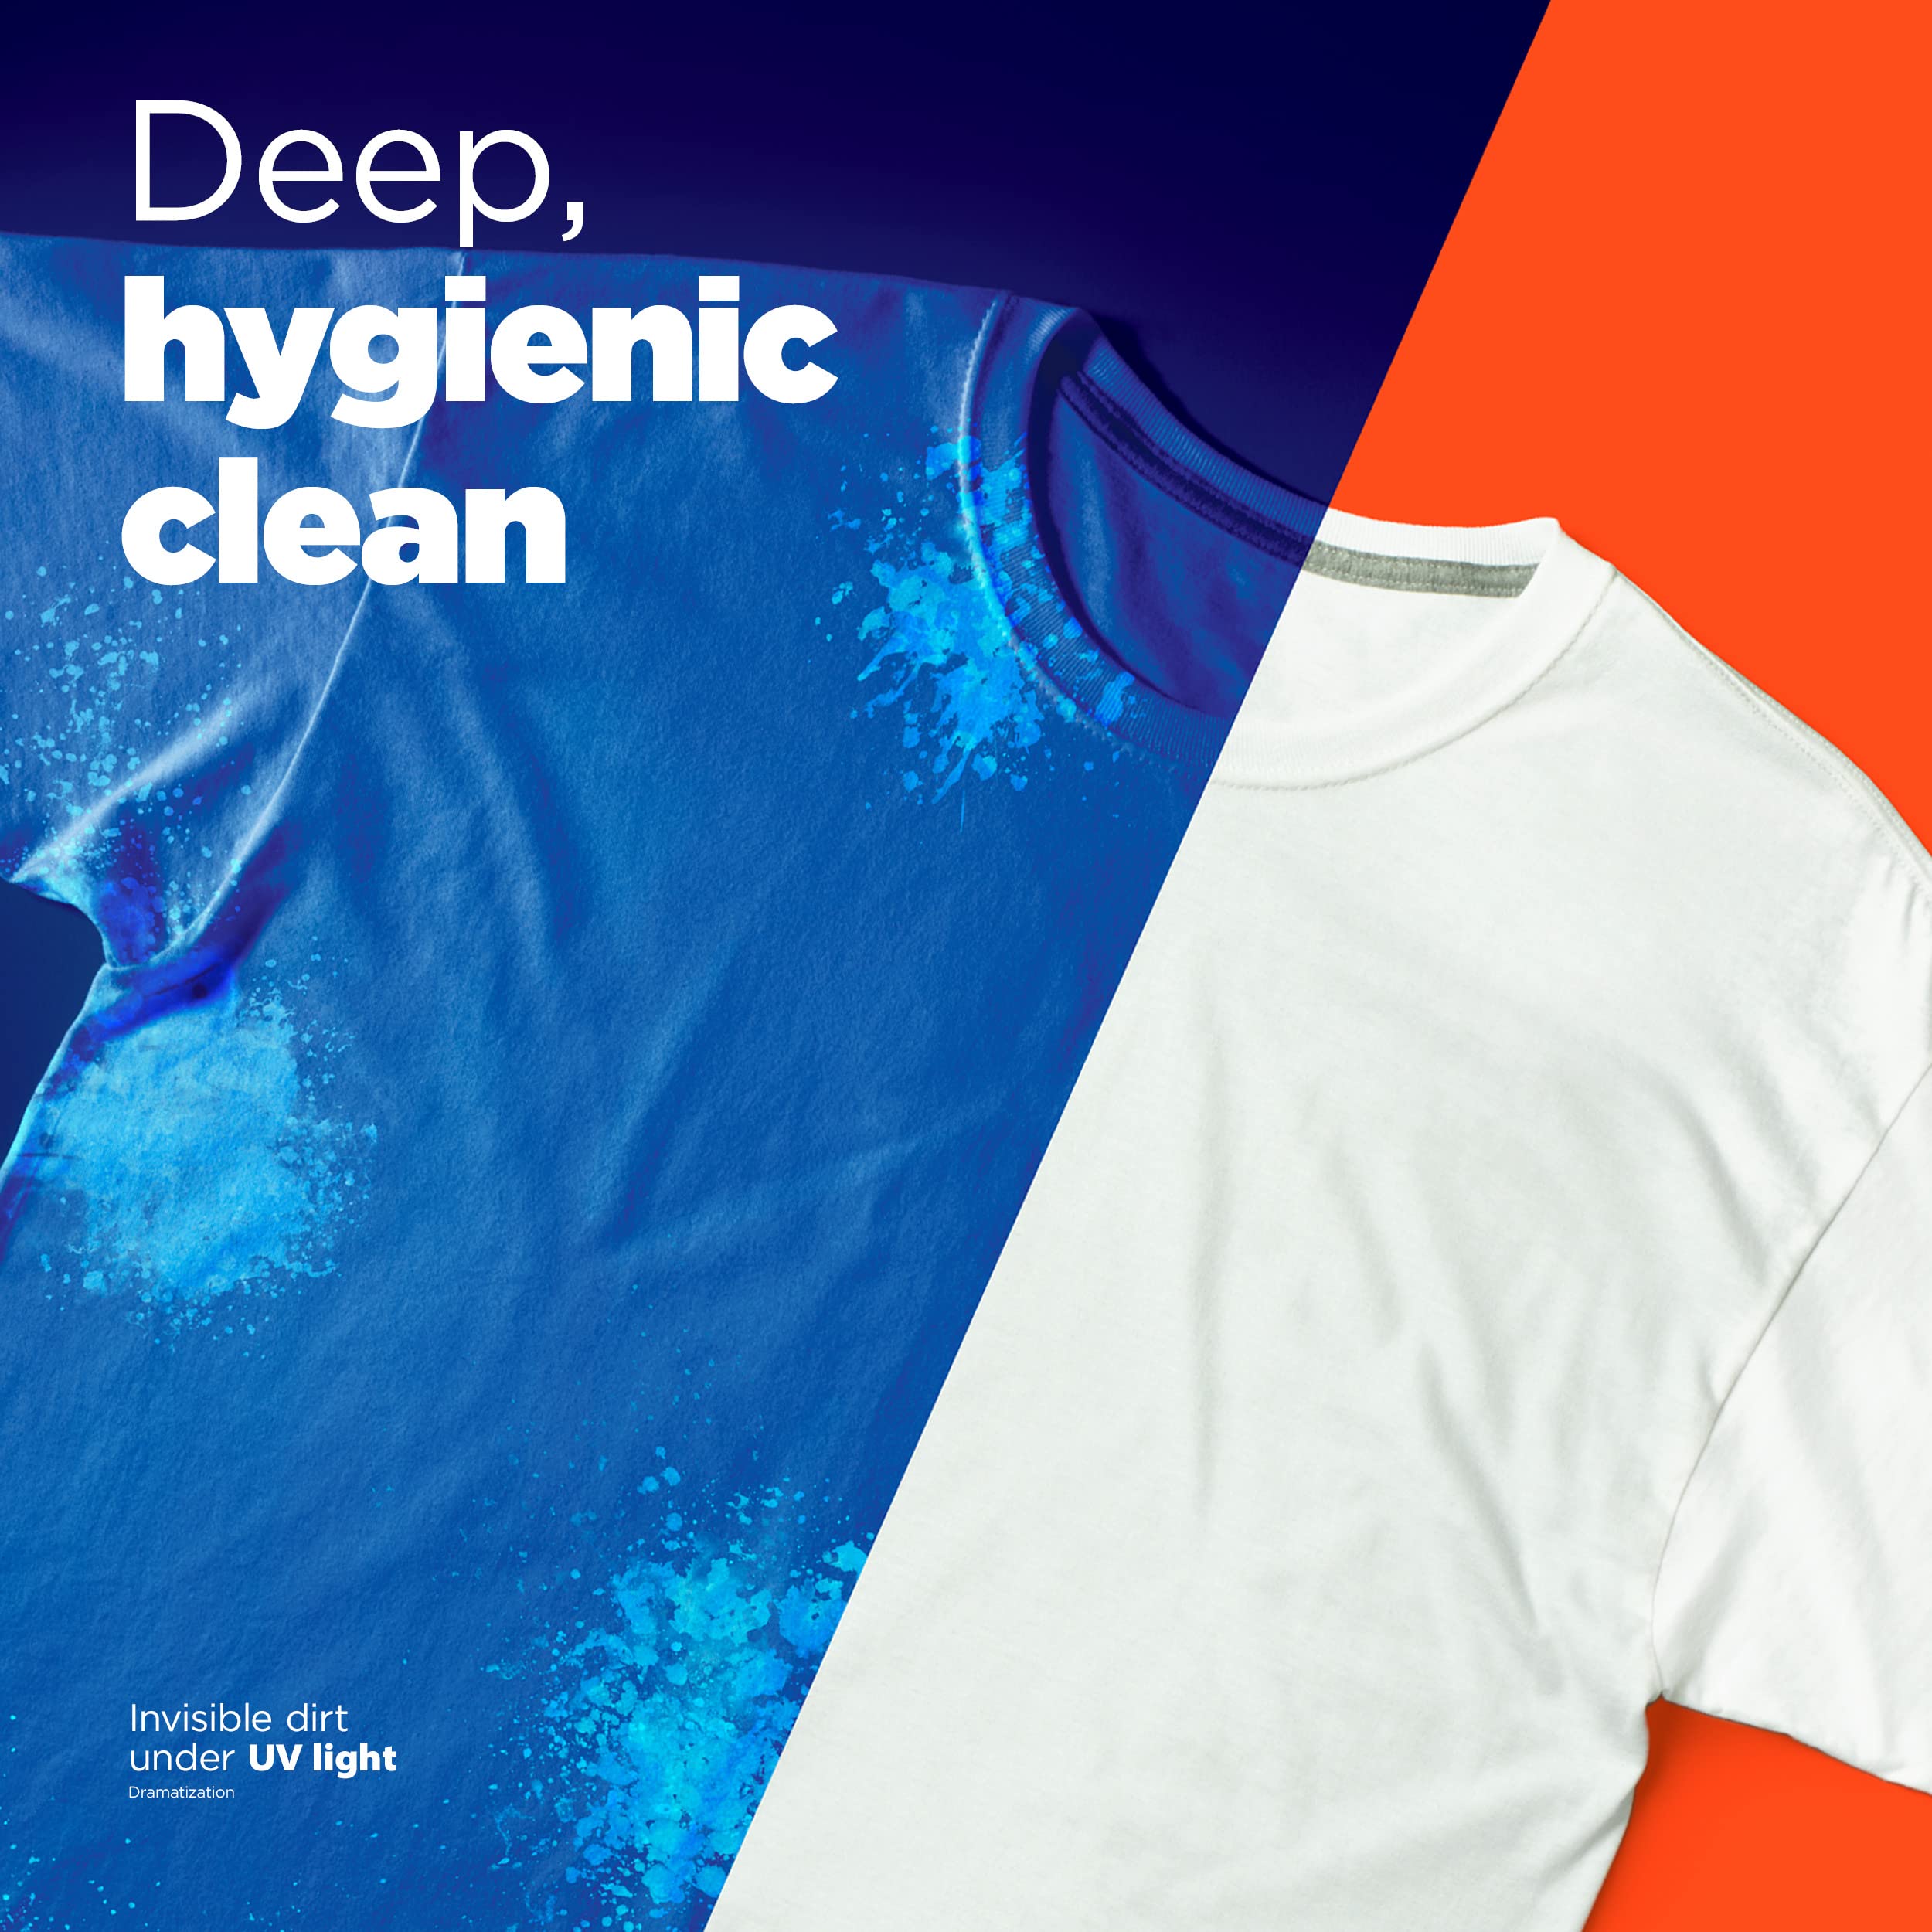 Tide Hygienic Clean Heavy 10X Duty Laundry Detergent Liquid Soap, Original Scent, 37 Fl Oz, 24 Loads, He Compatible